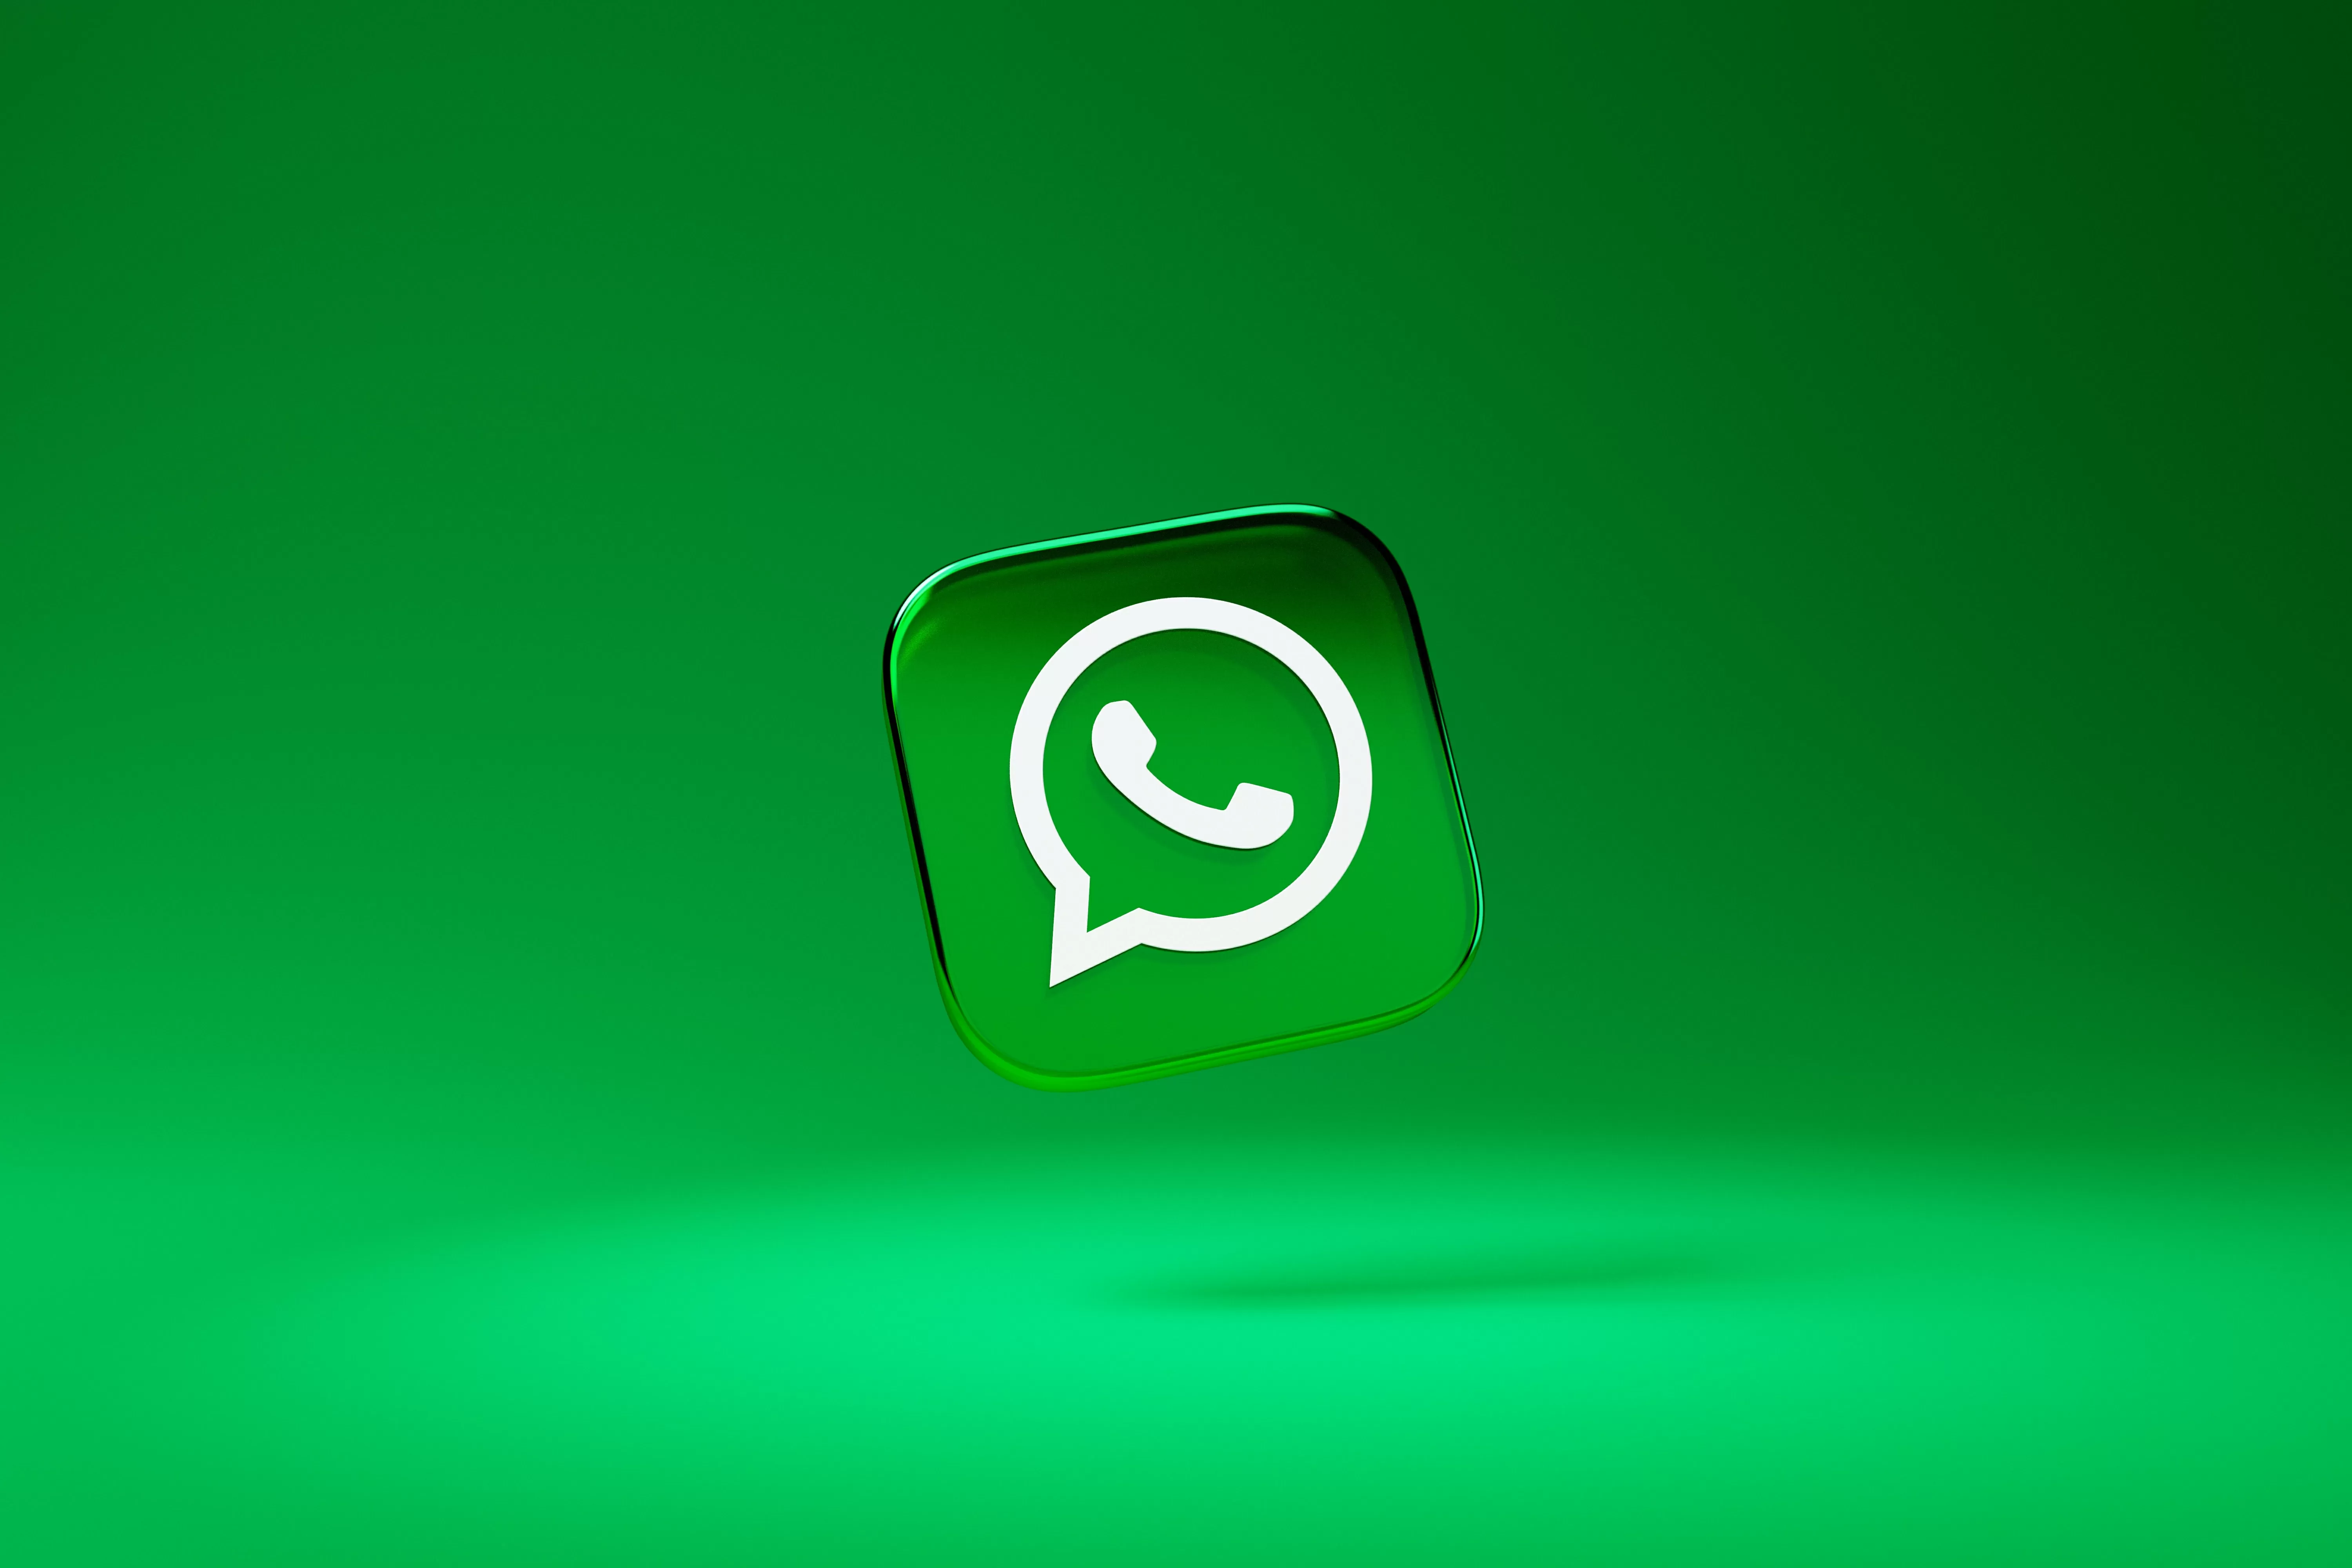 WhatsApp sta lavorando per migliorare la sua applicazione con nuove funzionalità